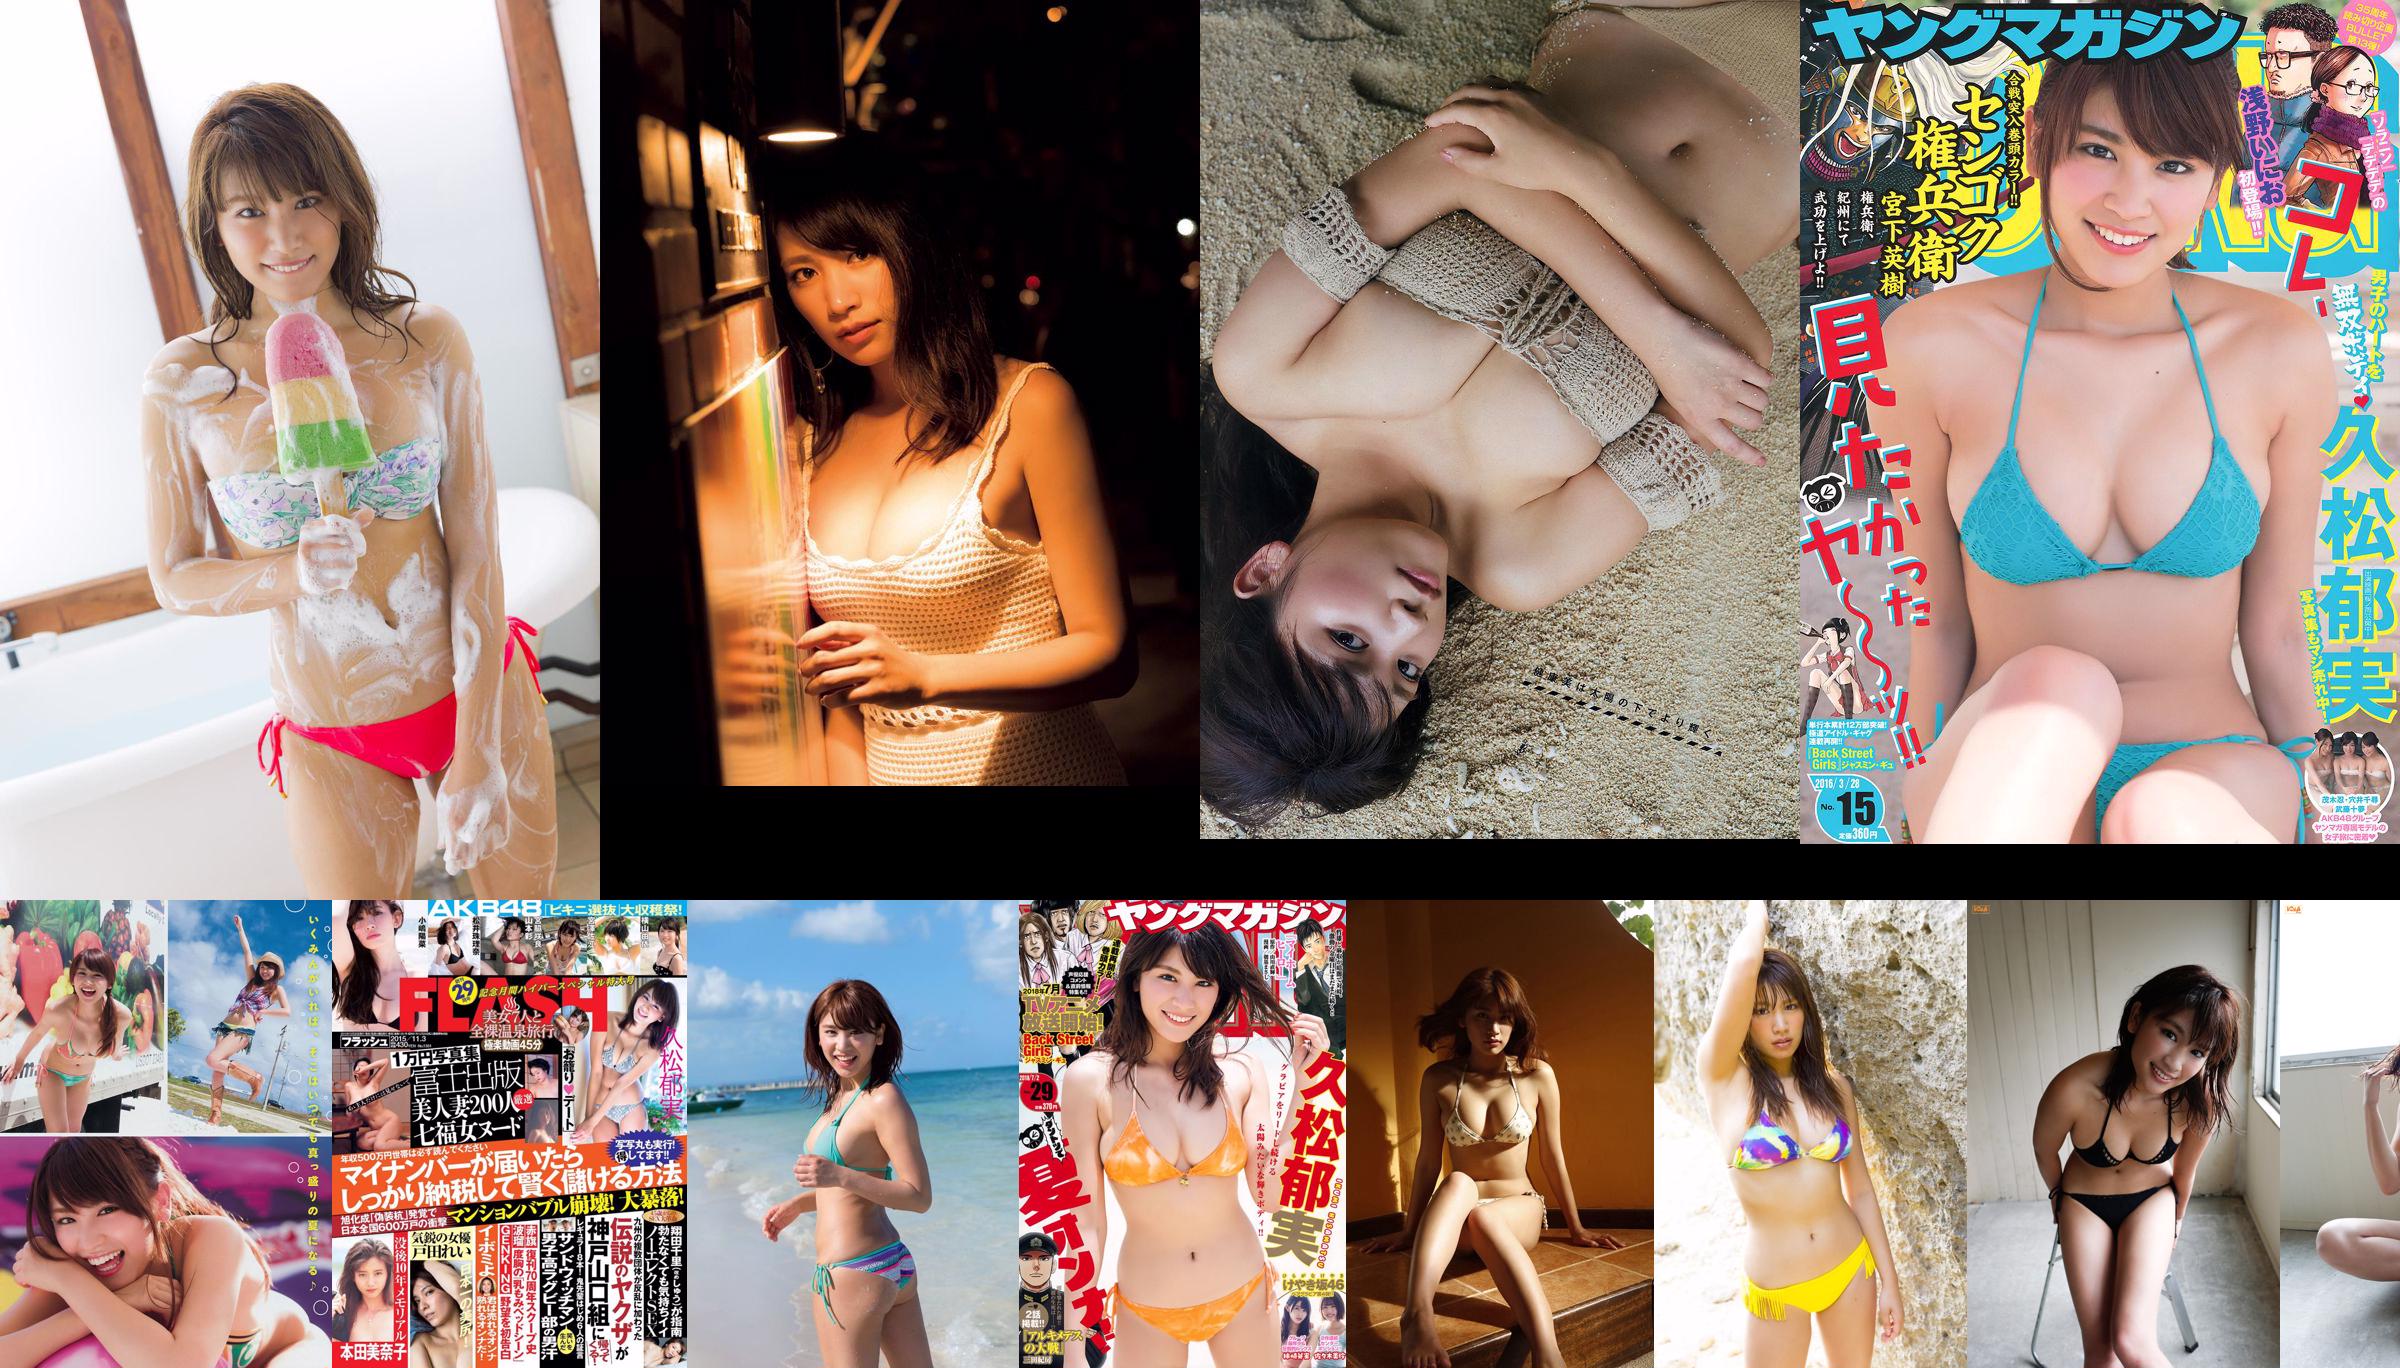 [Young Magazine] Ikumi Hisamatsu Haruna Kawaguchi 2014 Nr. 32 Foto No.ba416d Seite 5